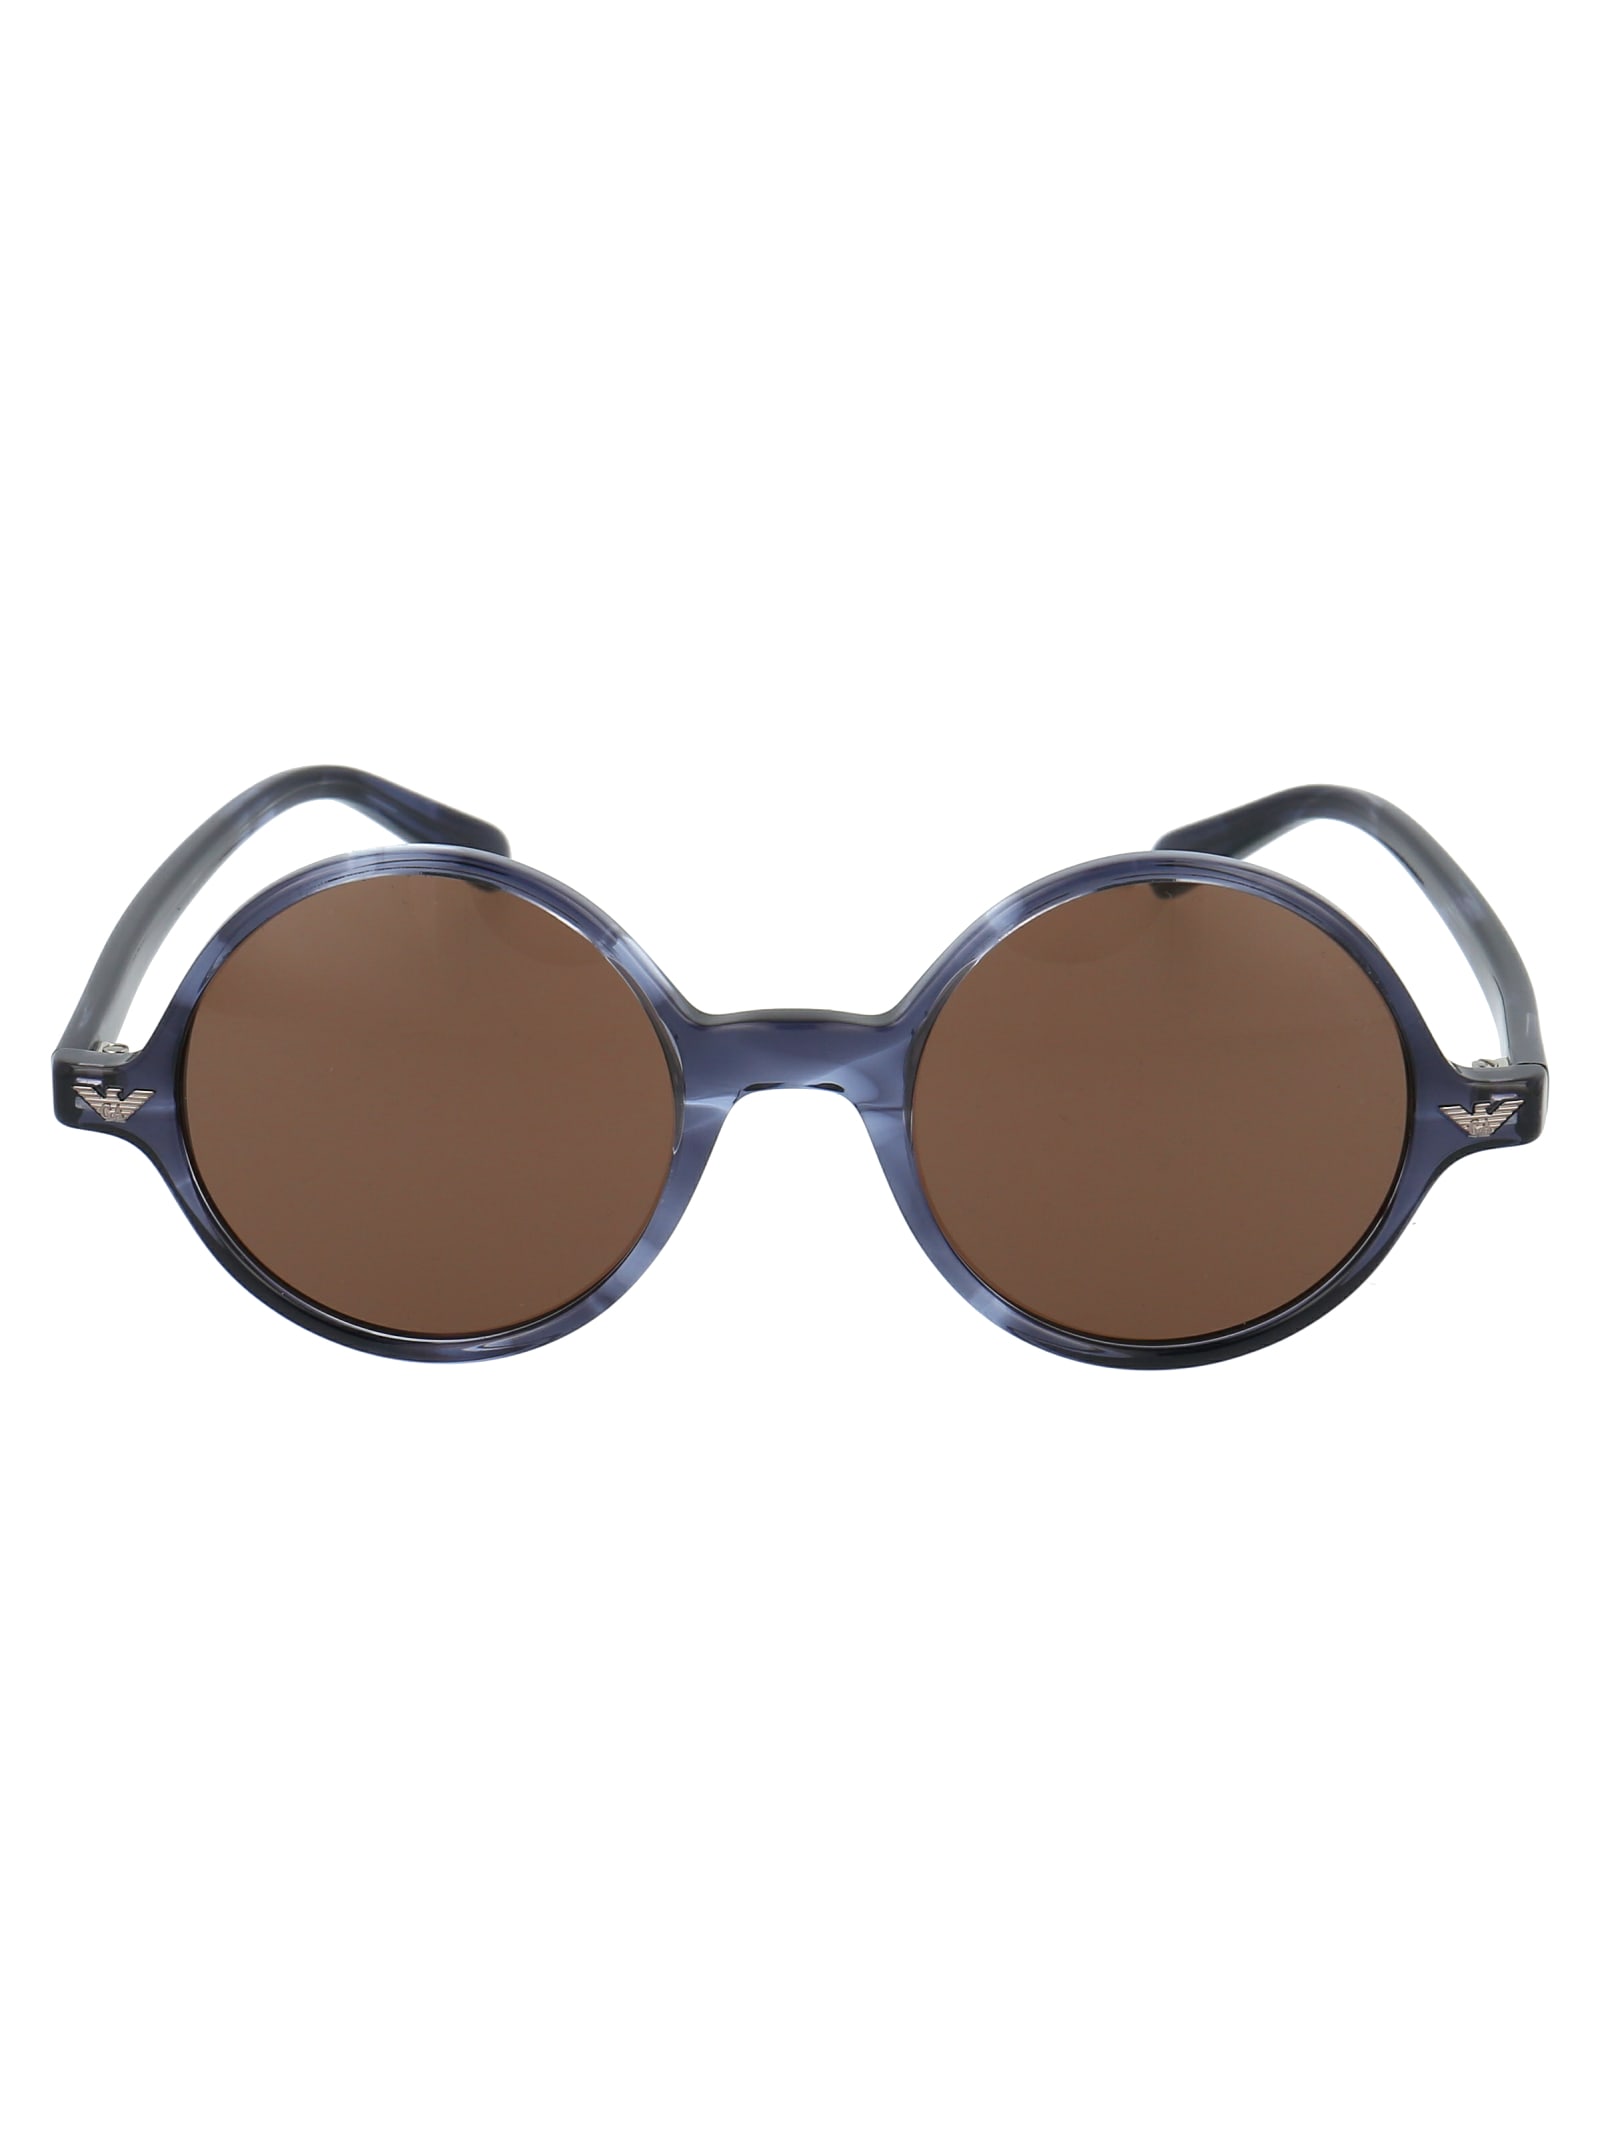 Emporio Armani 0ea 501m Sunglasses In 579273 Shiny Striped Blue